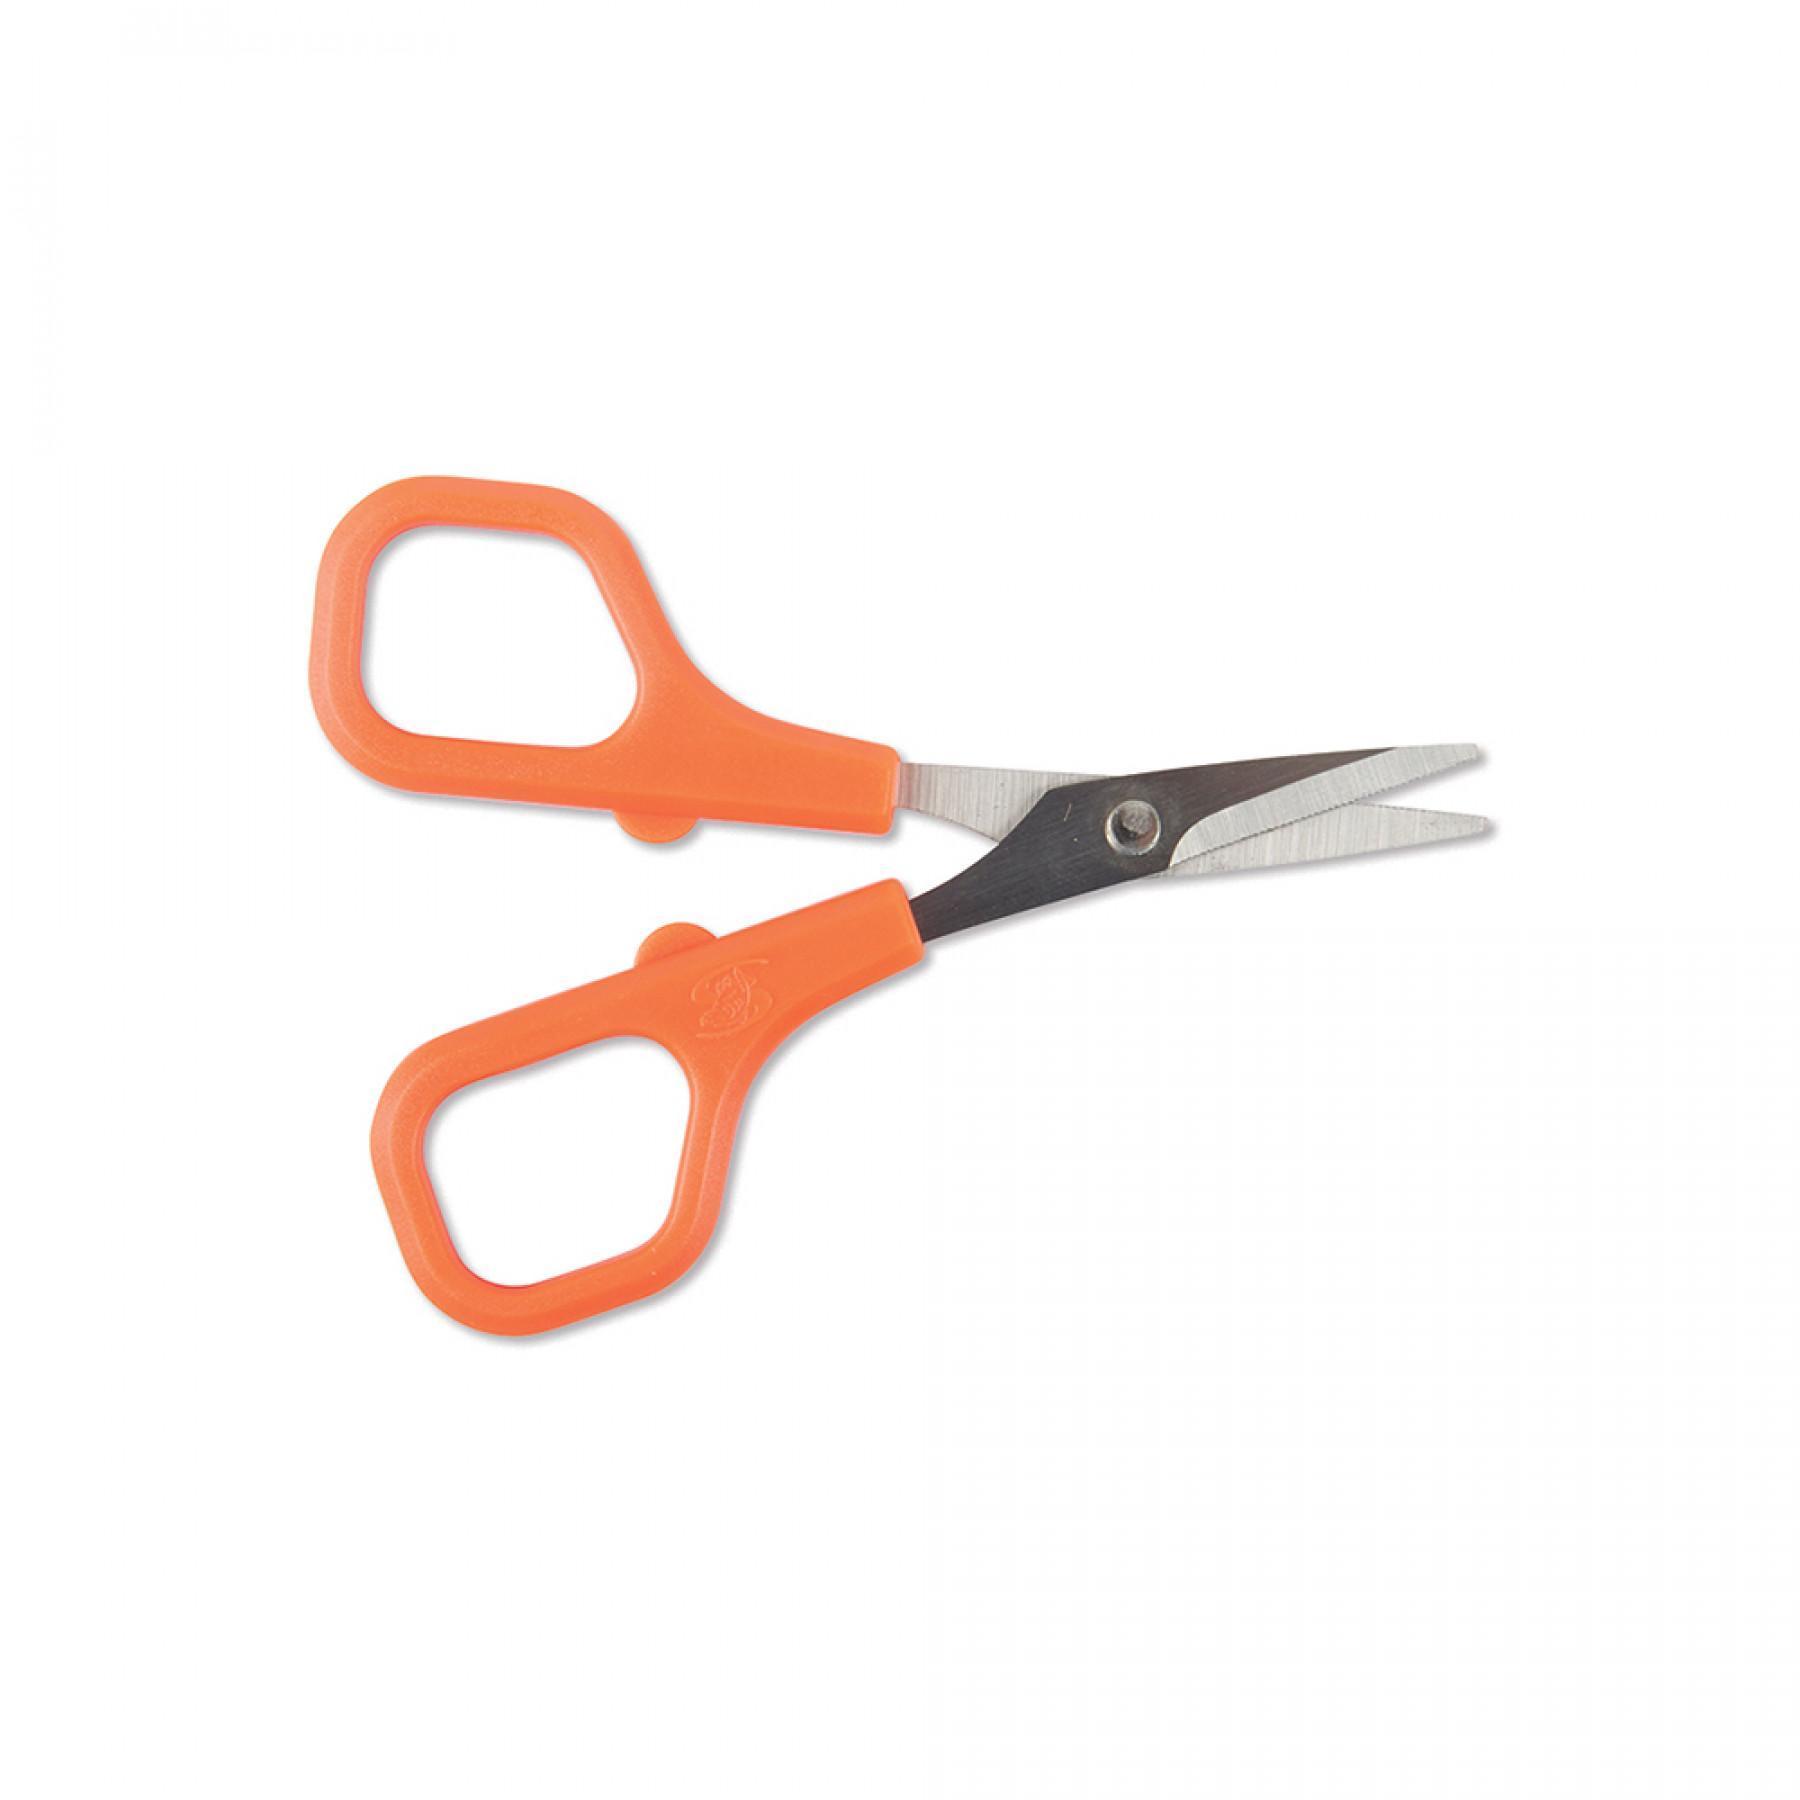 Steel scissors Carp Spirit Rig and Braid